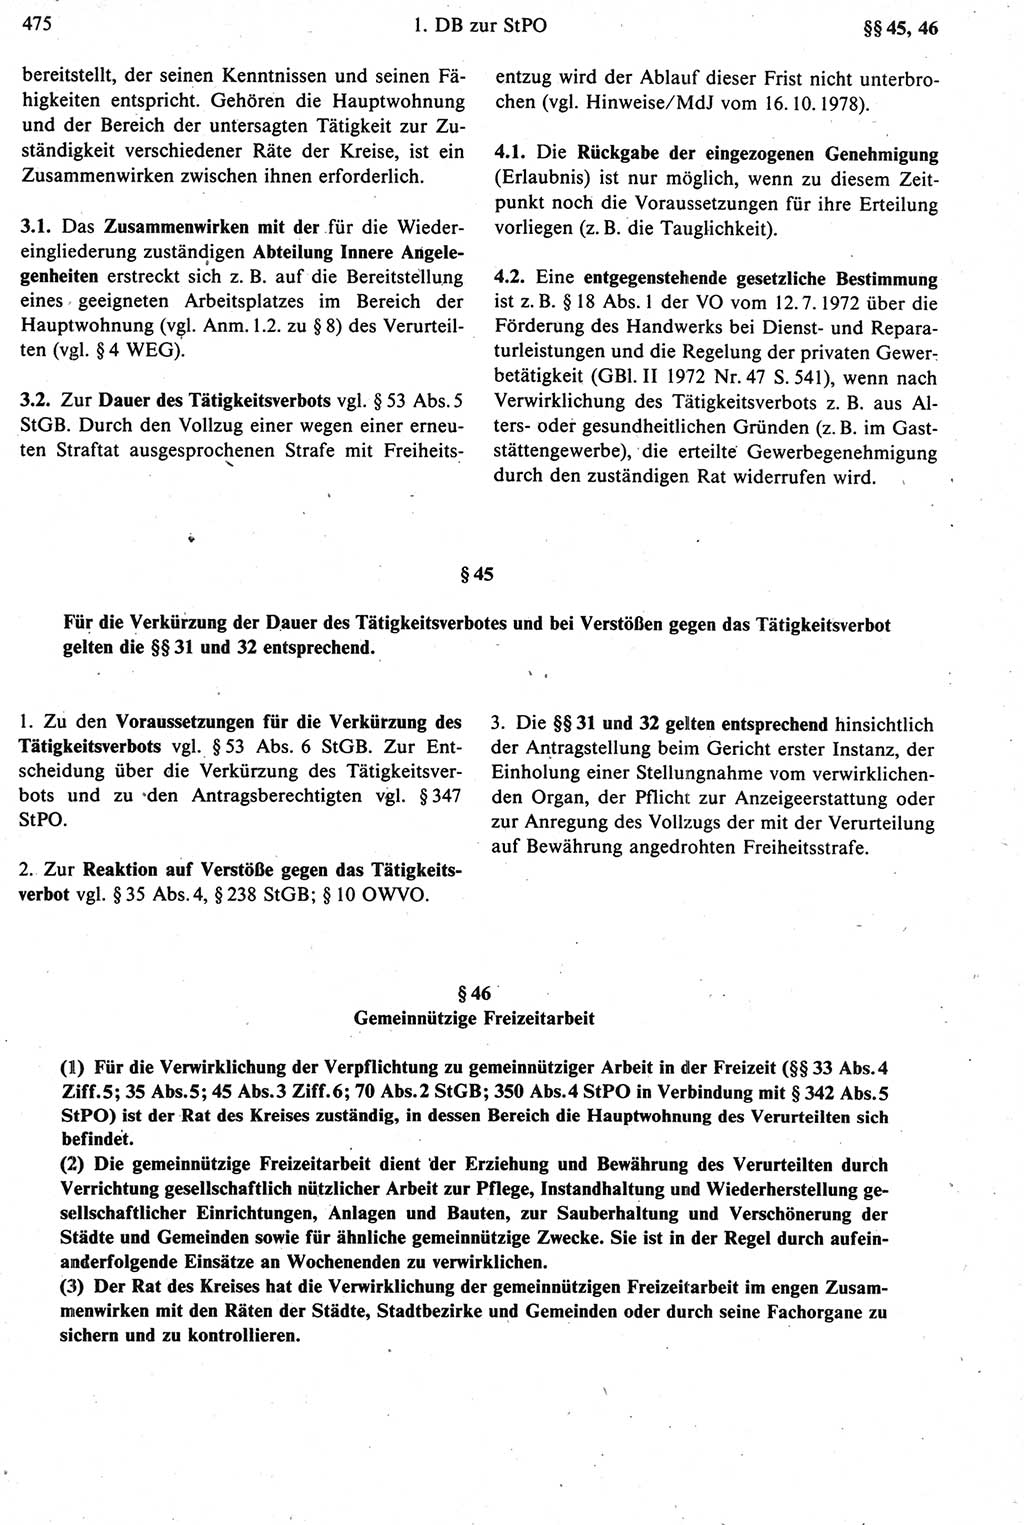 Strafprozeßrecht der DDR [Deutsche Demokratische Republik], Kommentar zur Strafprozeßordnung (StPO) 1987, Seite 475 (Strafprozeßr. DDR Komm. StPO 1987, S. 475)